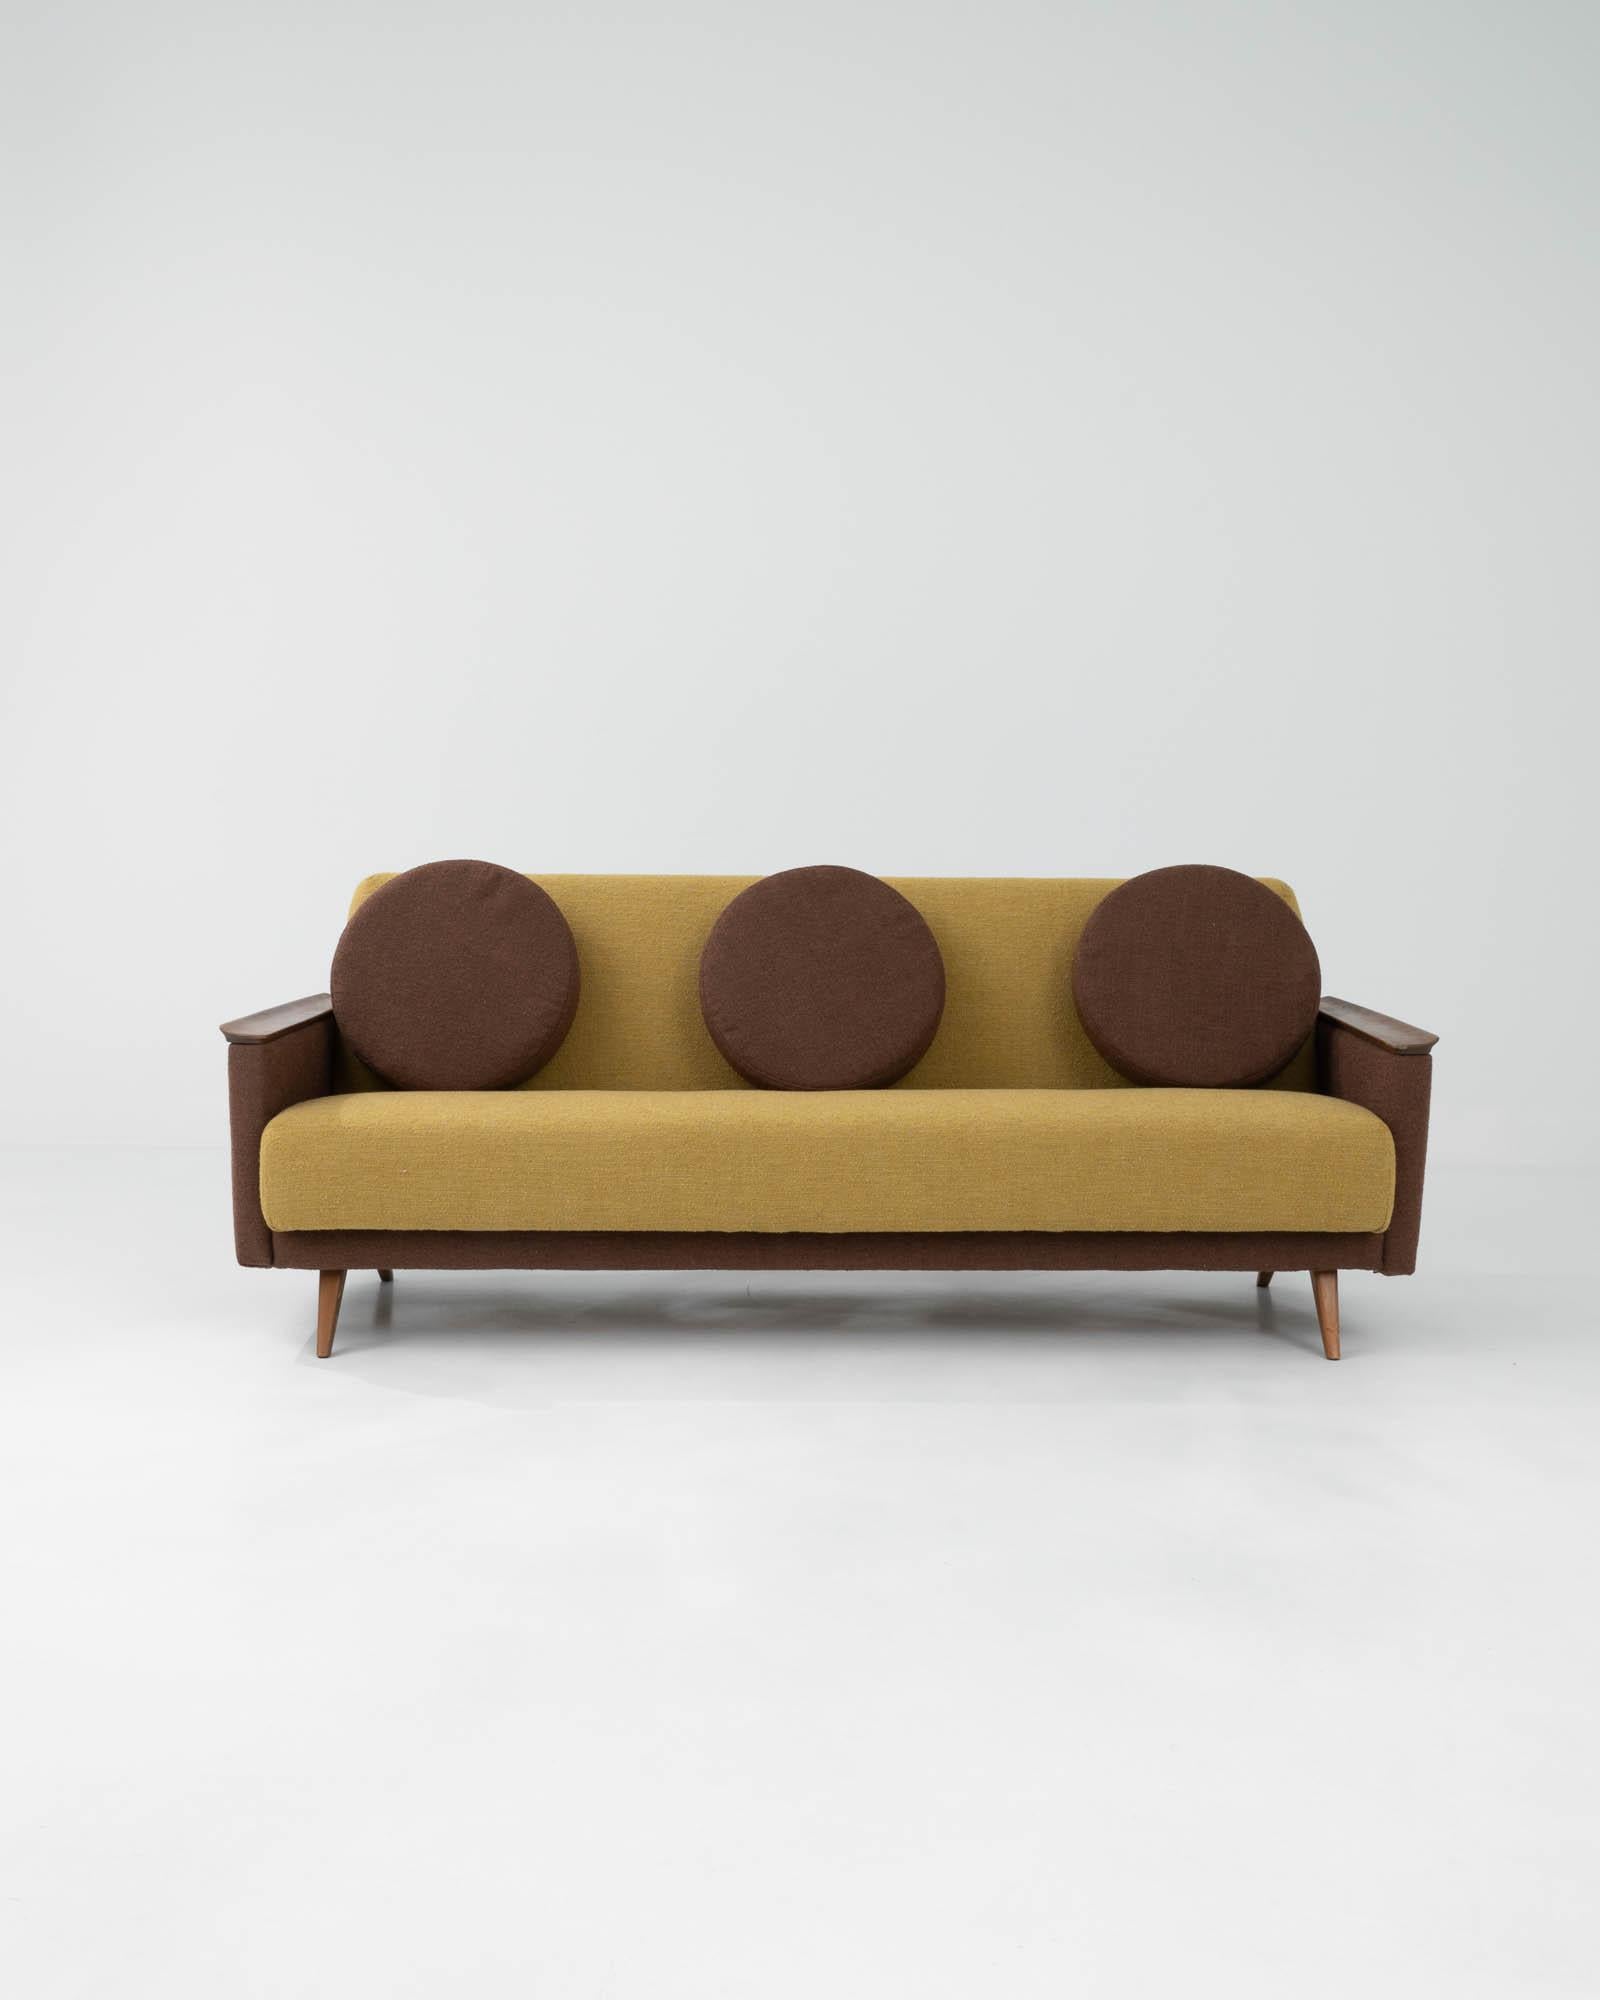 Fabriqué au cours du XXe siècle, ce canapé vintage mêle admirablement l'esthétique fantaisiste du milieu du siècle et le minimalisme fonctionnel du mobilier scandinave. Son design combine des éléments angulaires et circulaires, mettant en valeur des